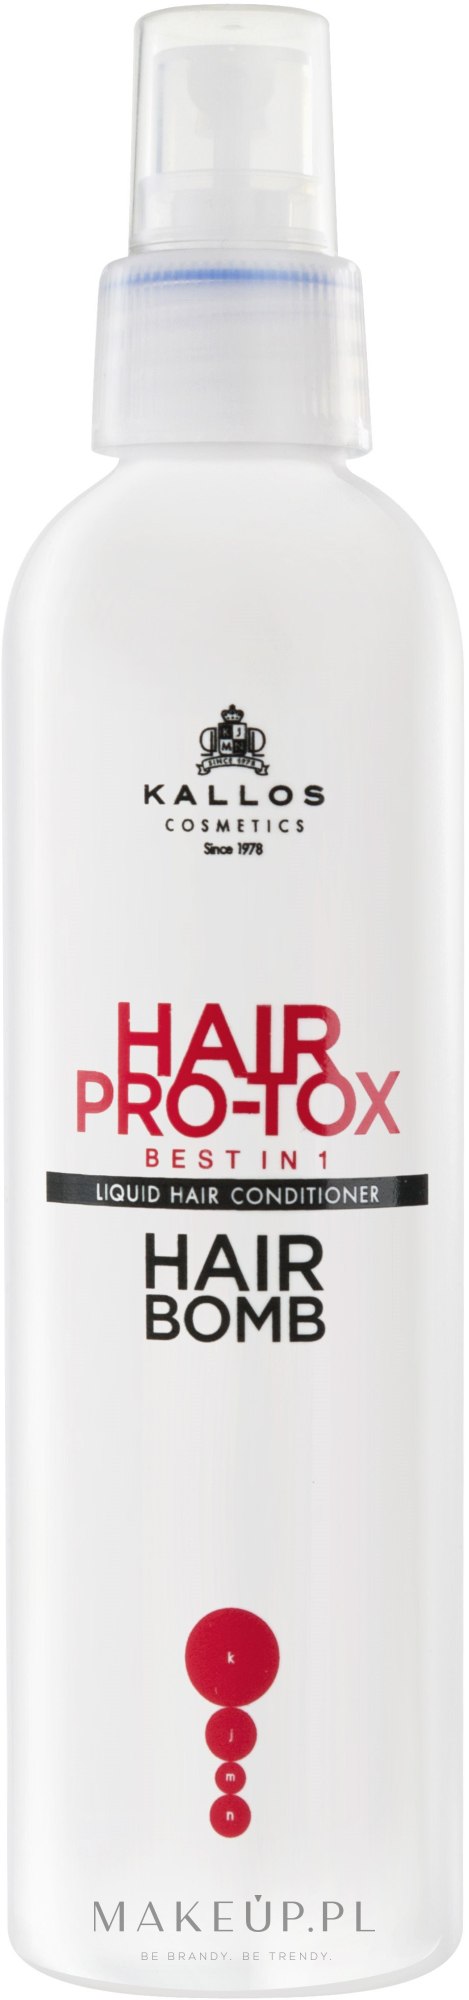 kallos hair pro-tox spray lakier do włosów